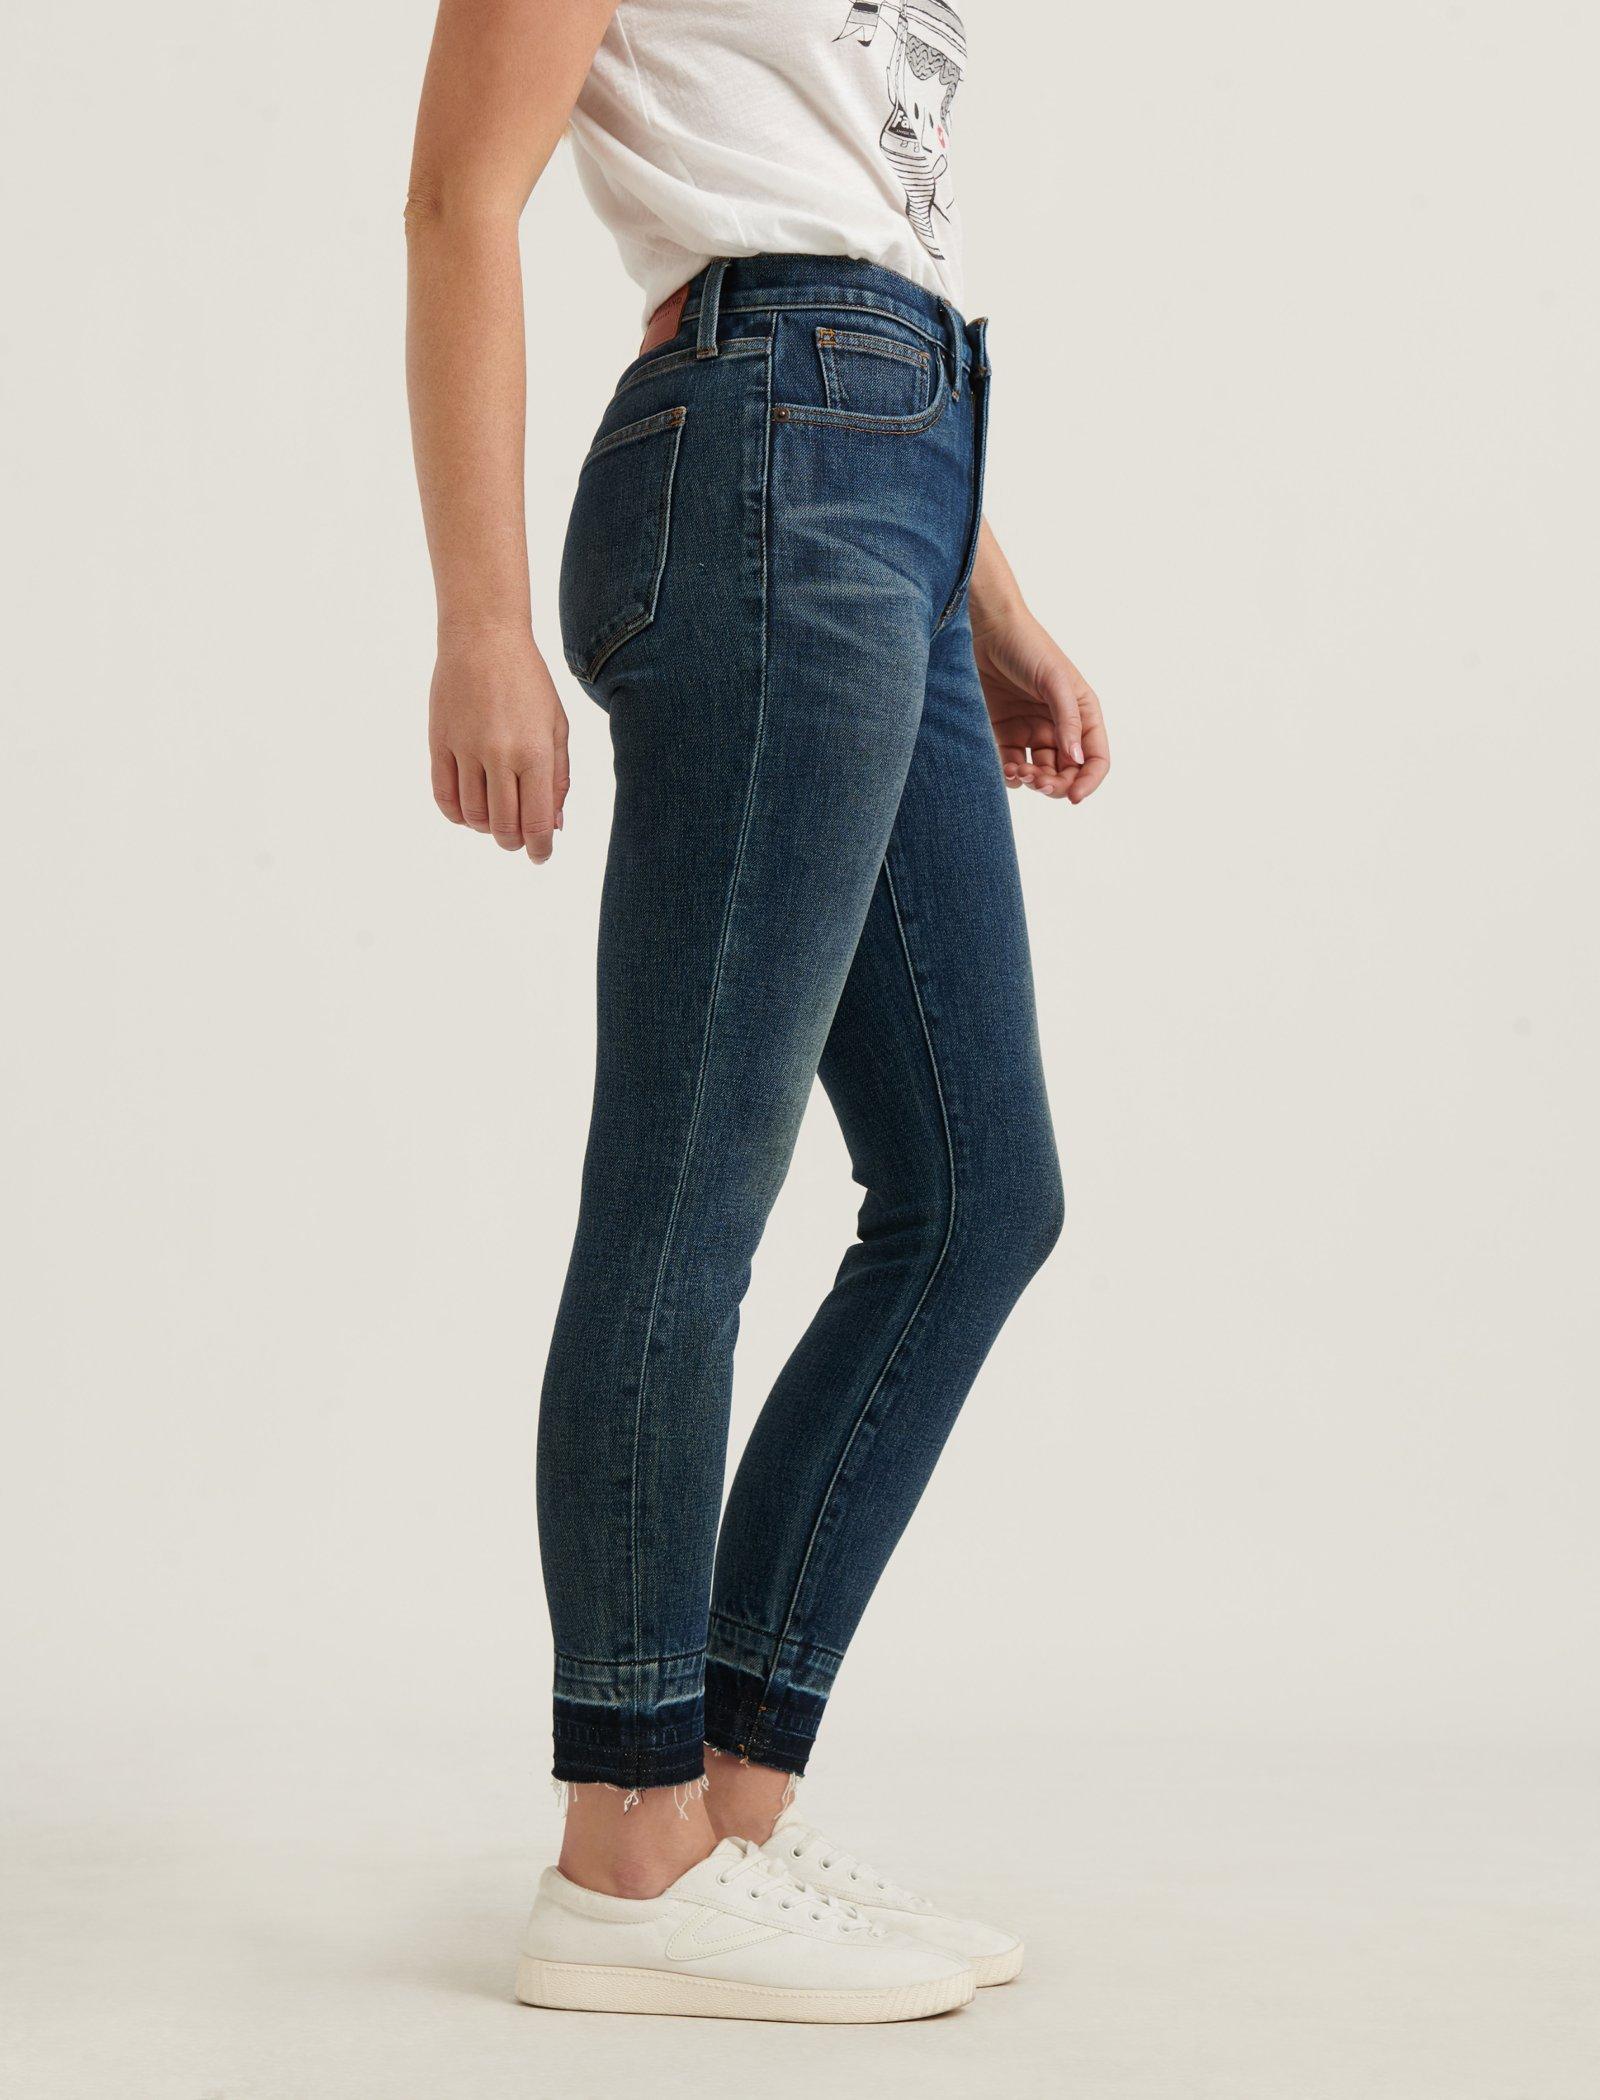 lucky jeans bridgette skinny